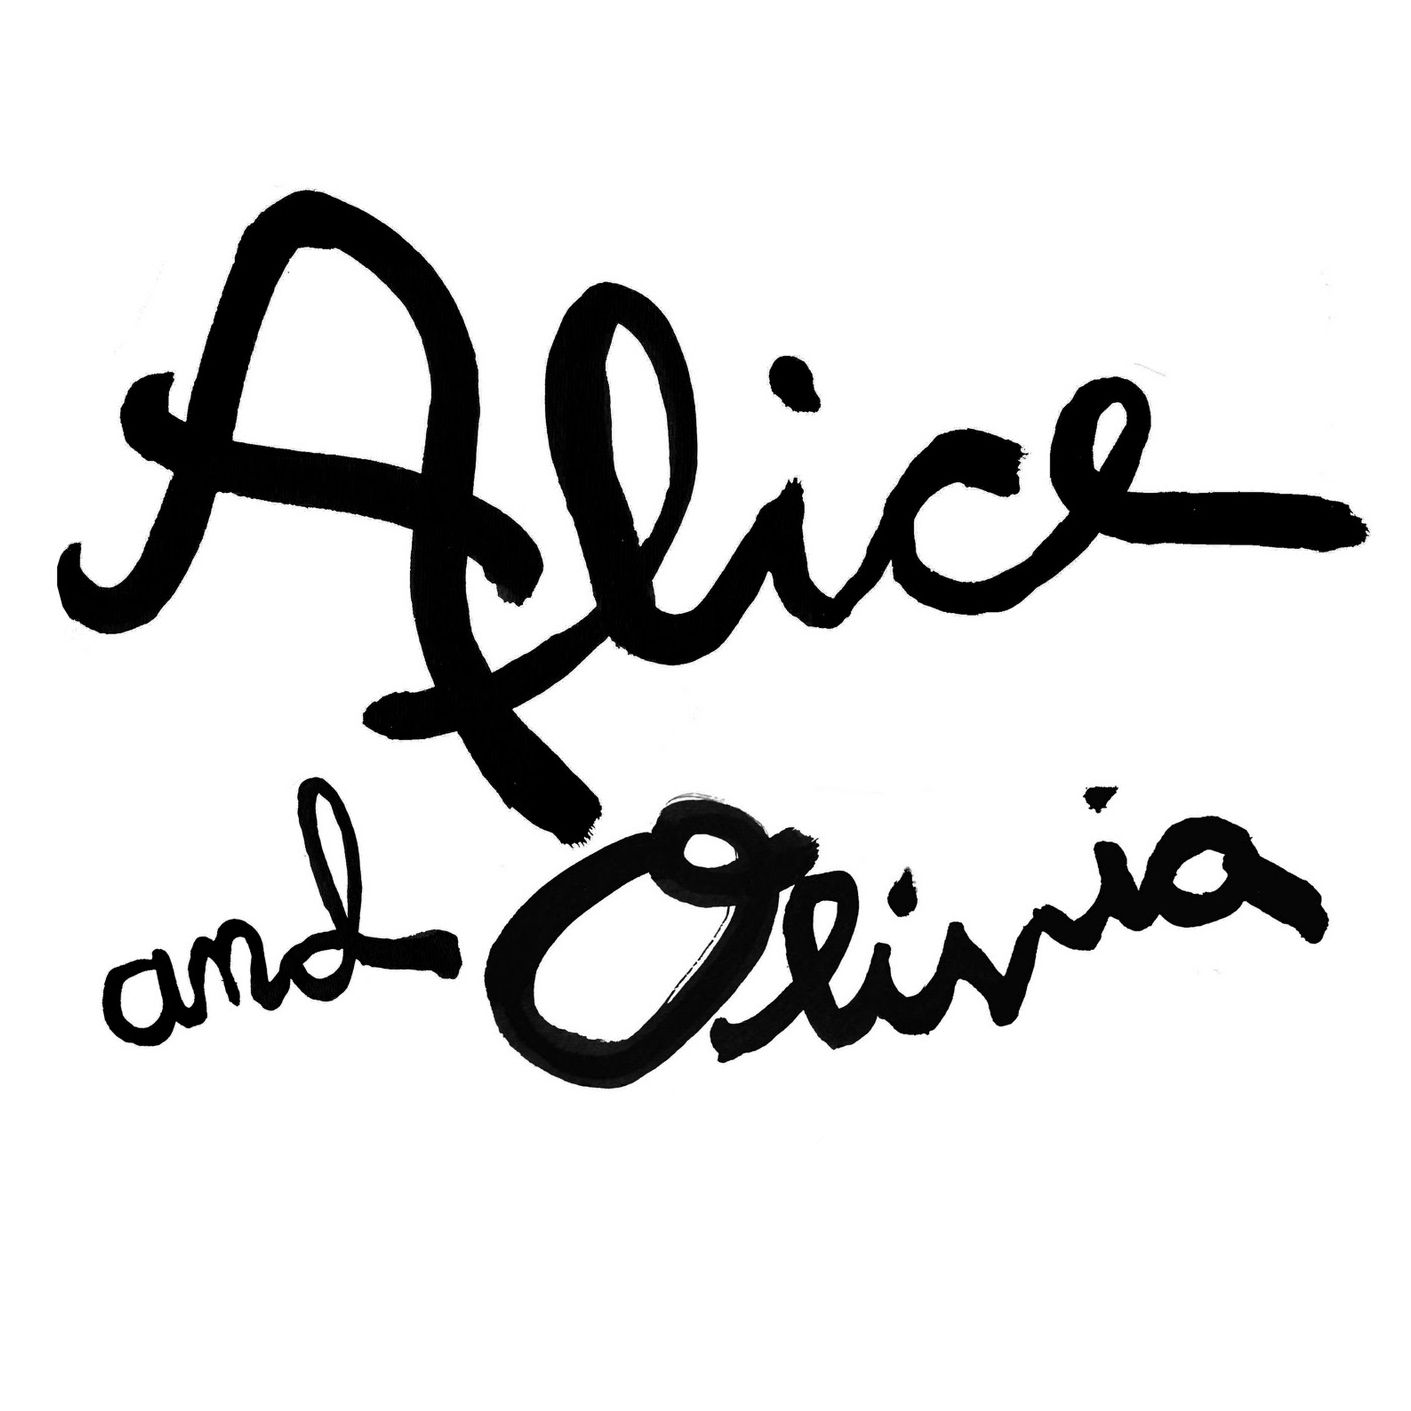 Alice And Olivia Logo